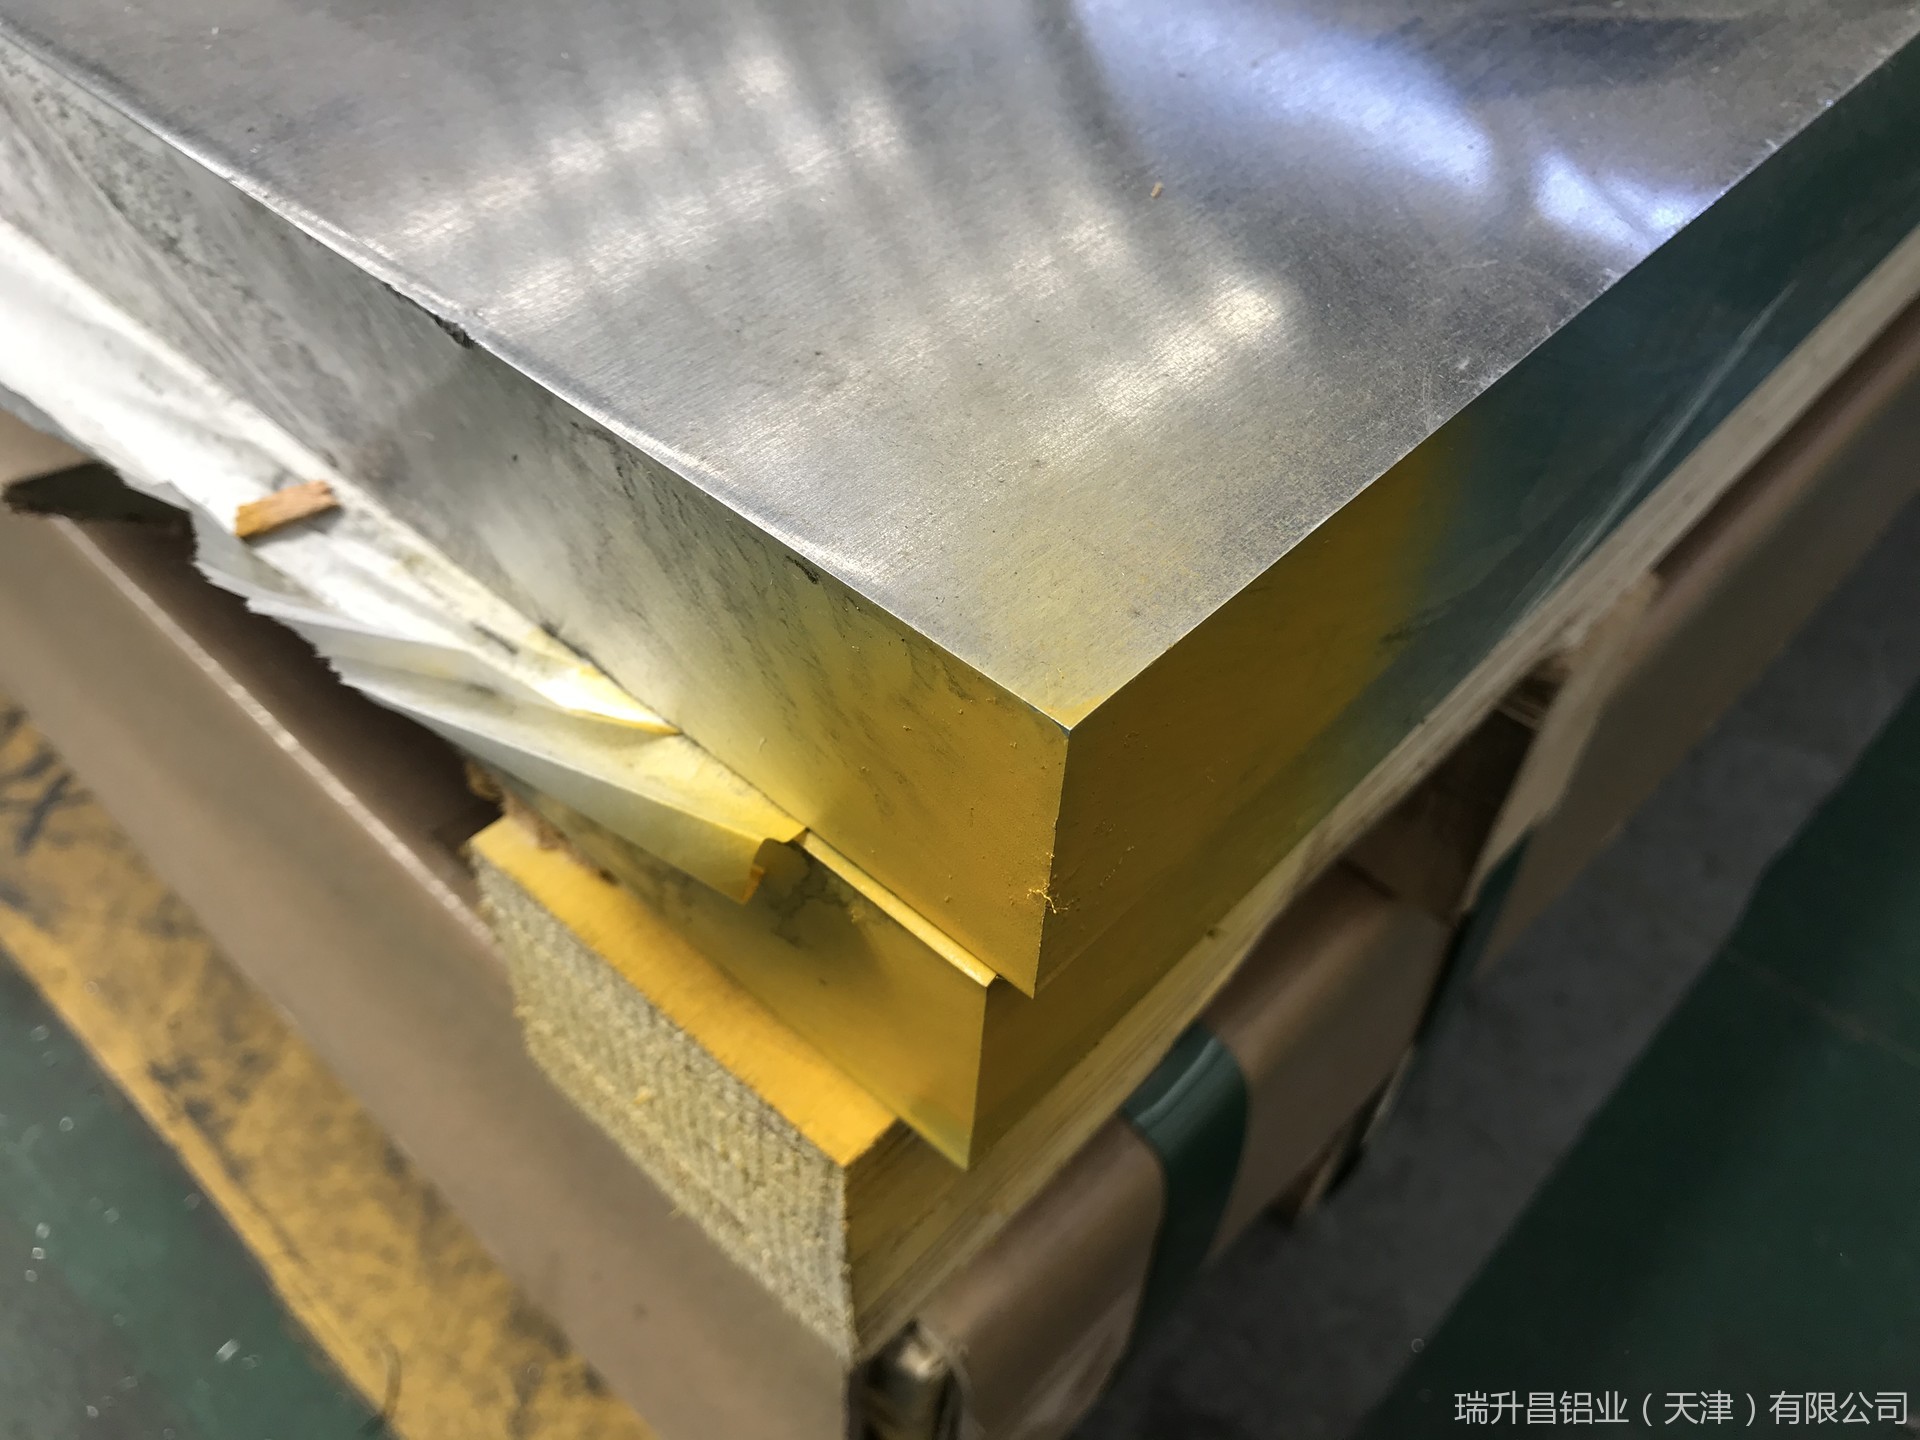 天津瑞升昌铝业供应5052合金铝板 5052铝板价格厂家 国标5052h22铝板 防锈铝板批发示例图14